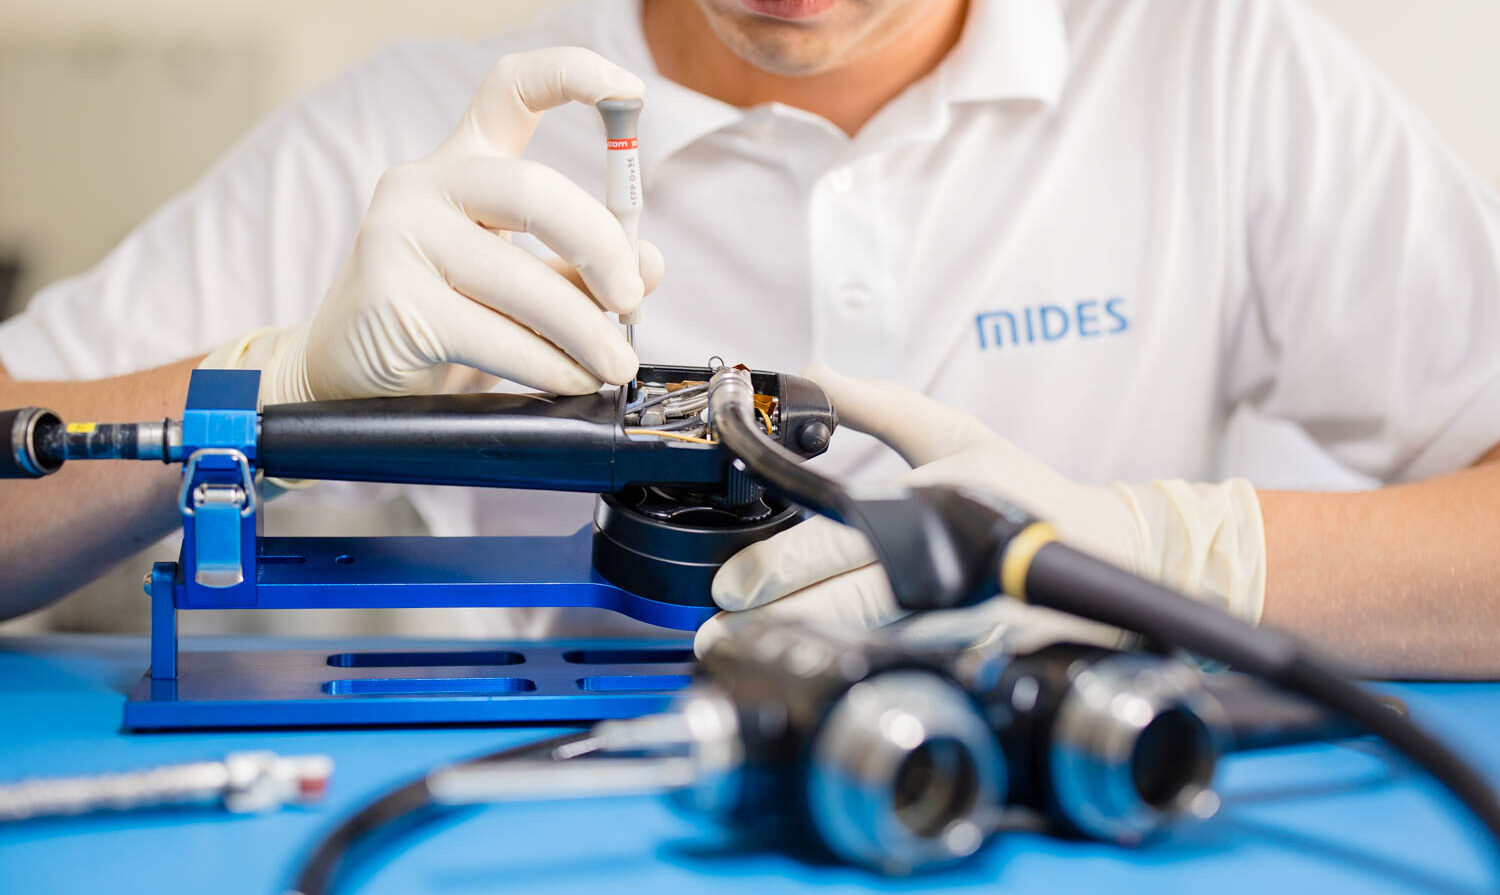 Endoskopreparatur bei MIDES, fachgerechte Instandsetzung von Endoskopen